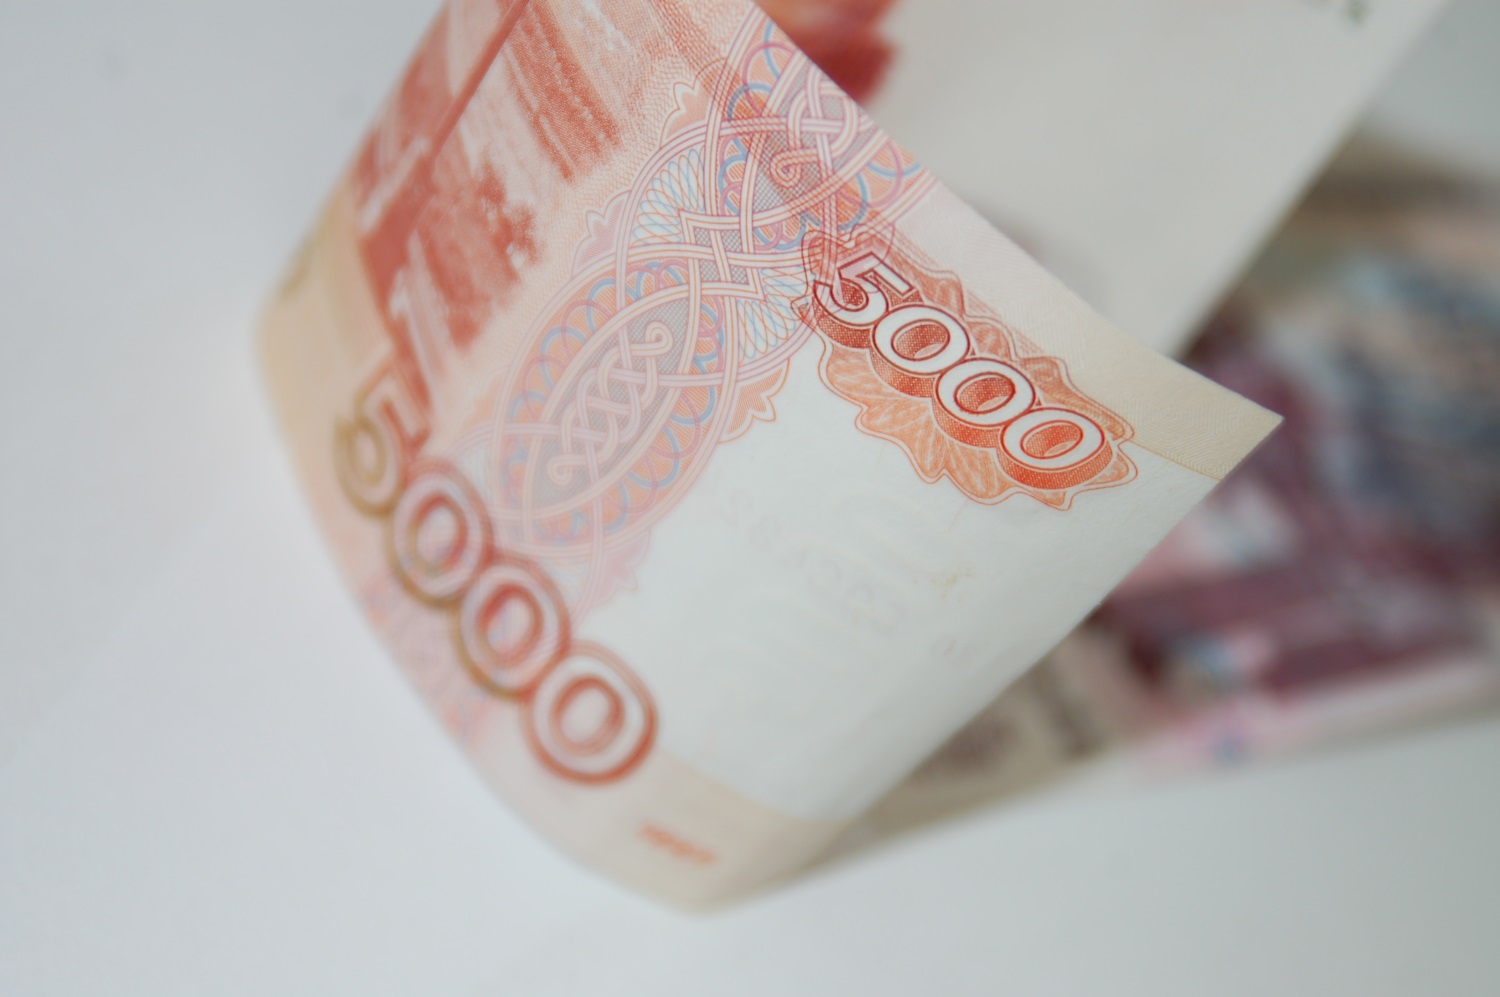 Количество фальшивых денег в Пермском крае снизилось почти в 2,5 раза